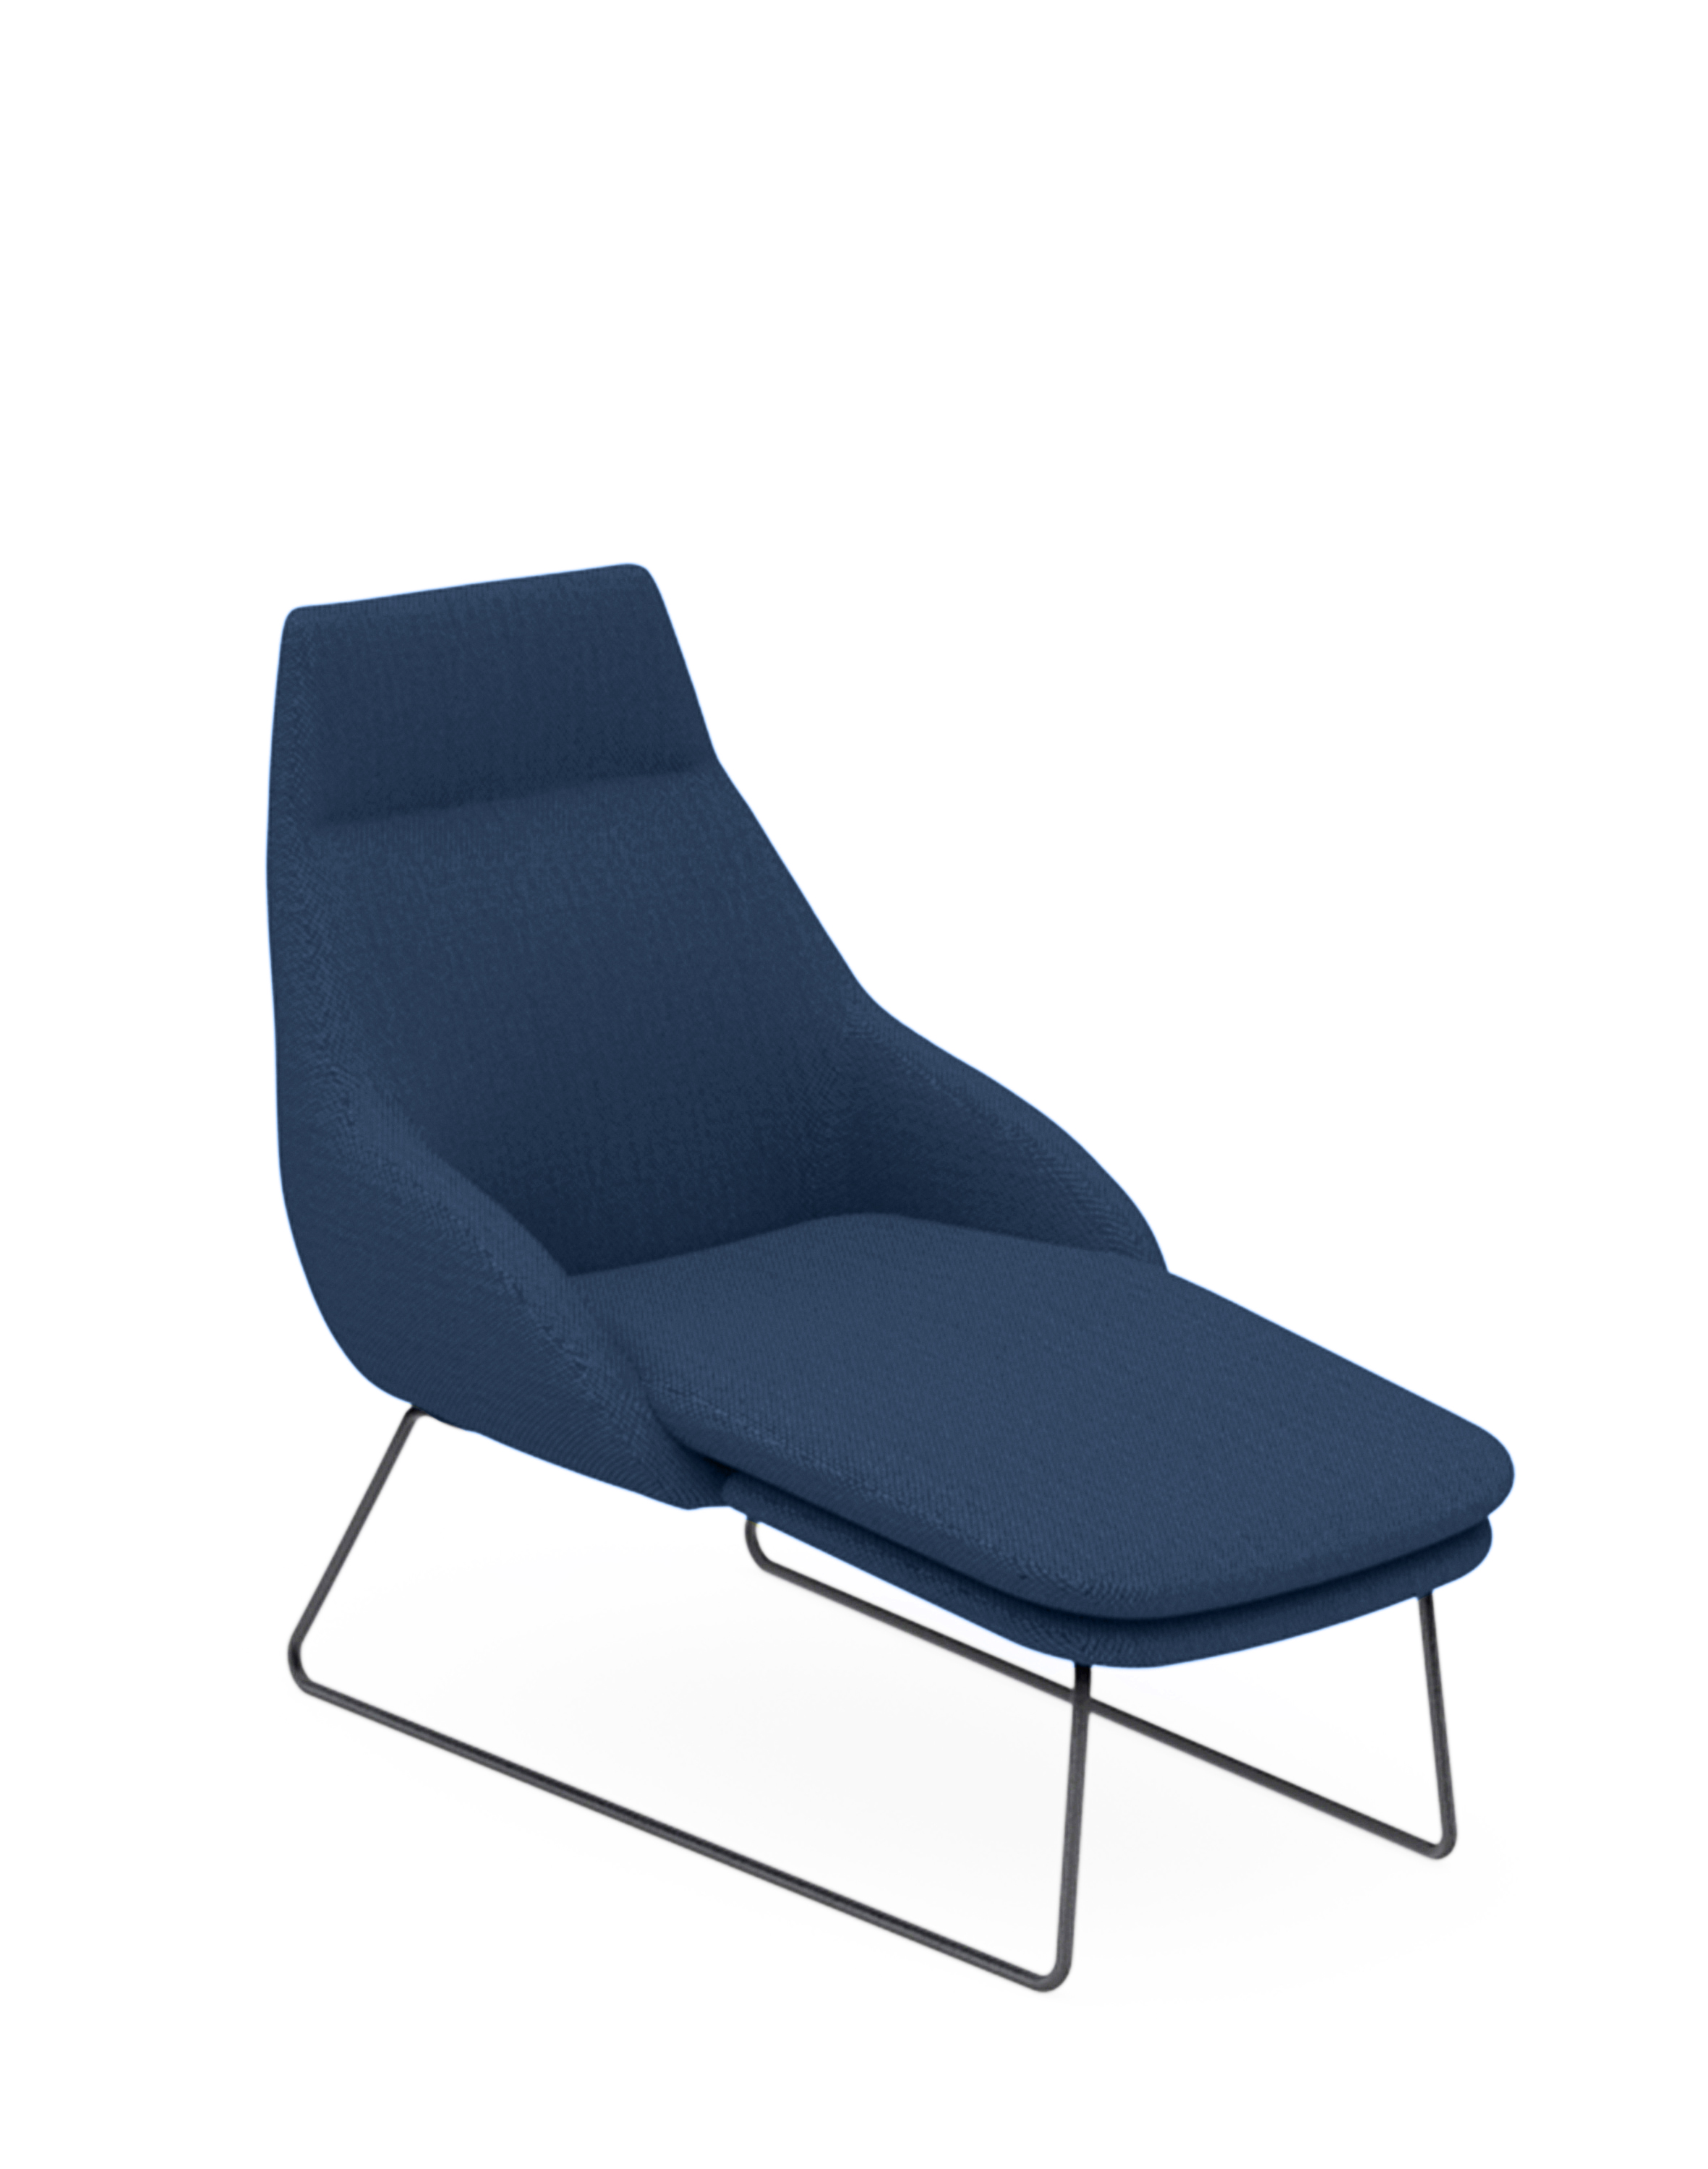 casala blue lounge chaise longue